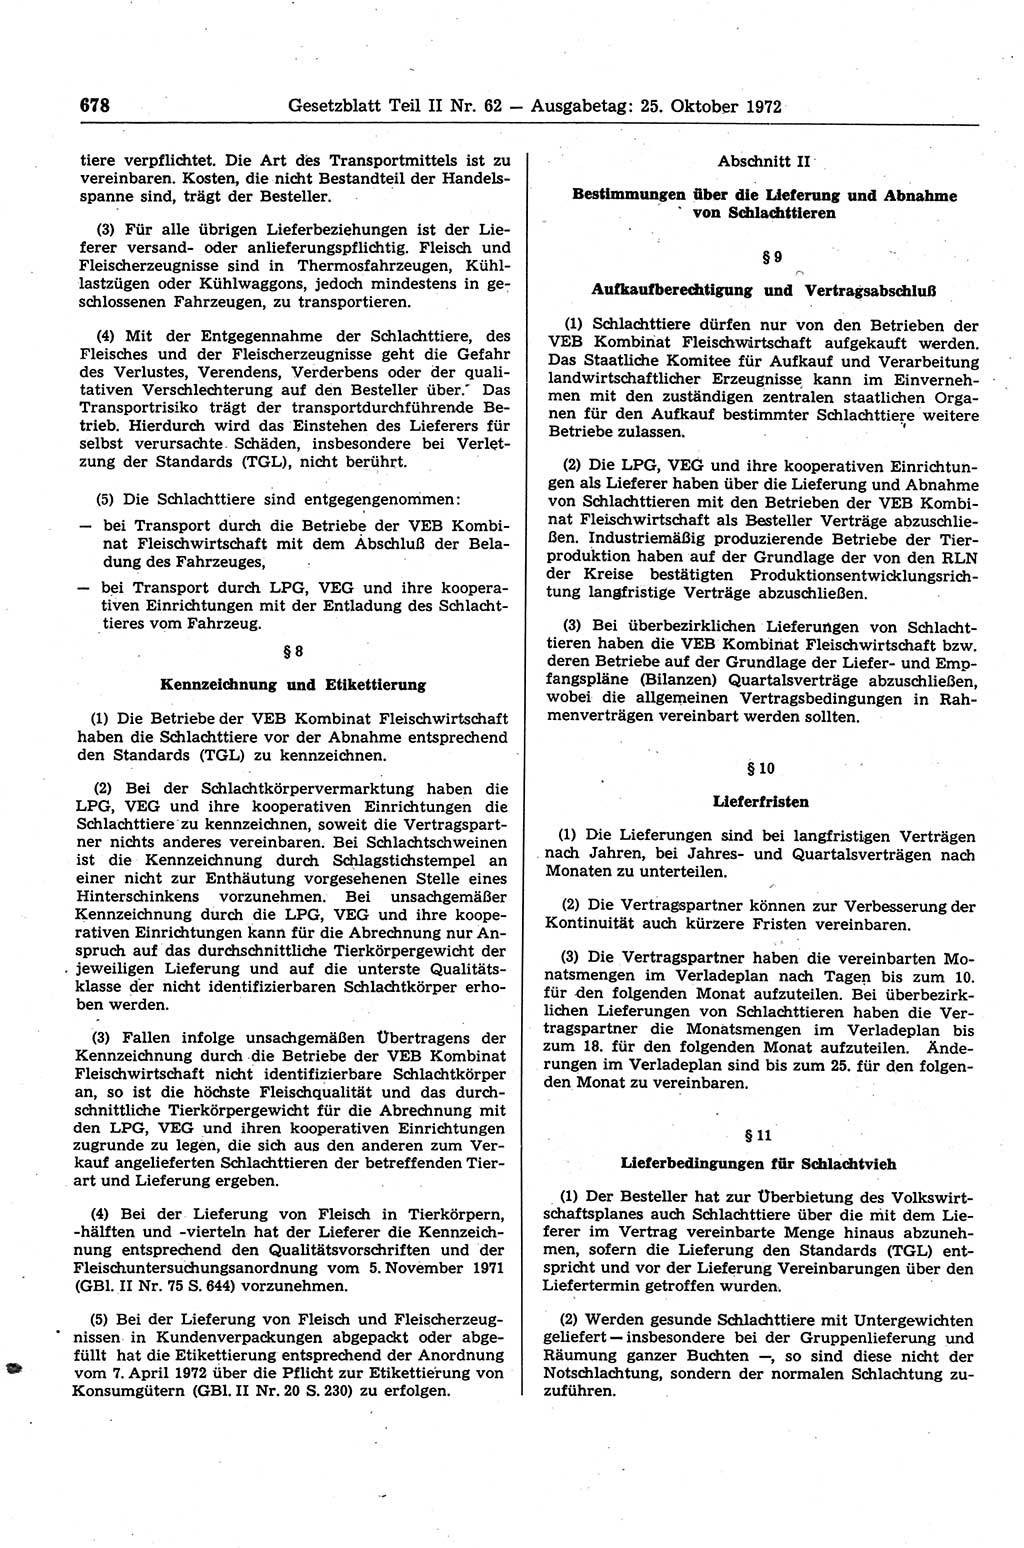 Gesetzblatt (GBl.) der Deutschen Demokratischen Republik (DDR) Teil ⅠⅠ 1972, Seite 678 (GBl. DDR ⅠⅠ 1972, S. 678)